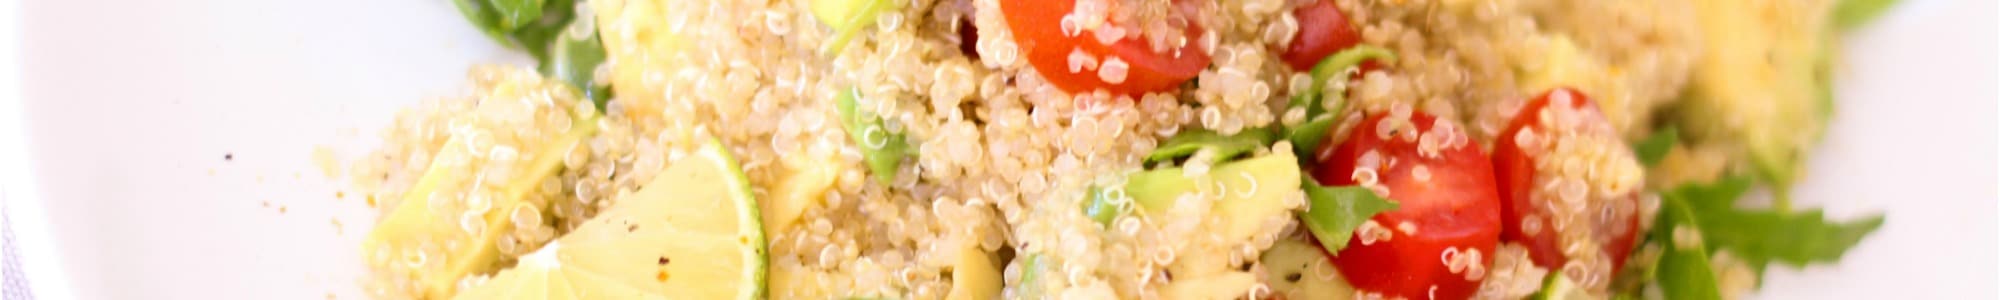 Quinoa banner image